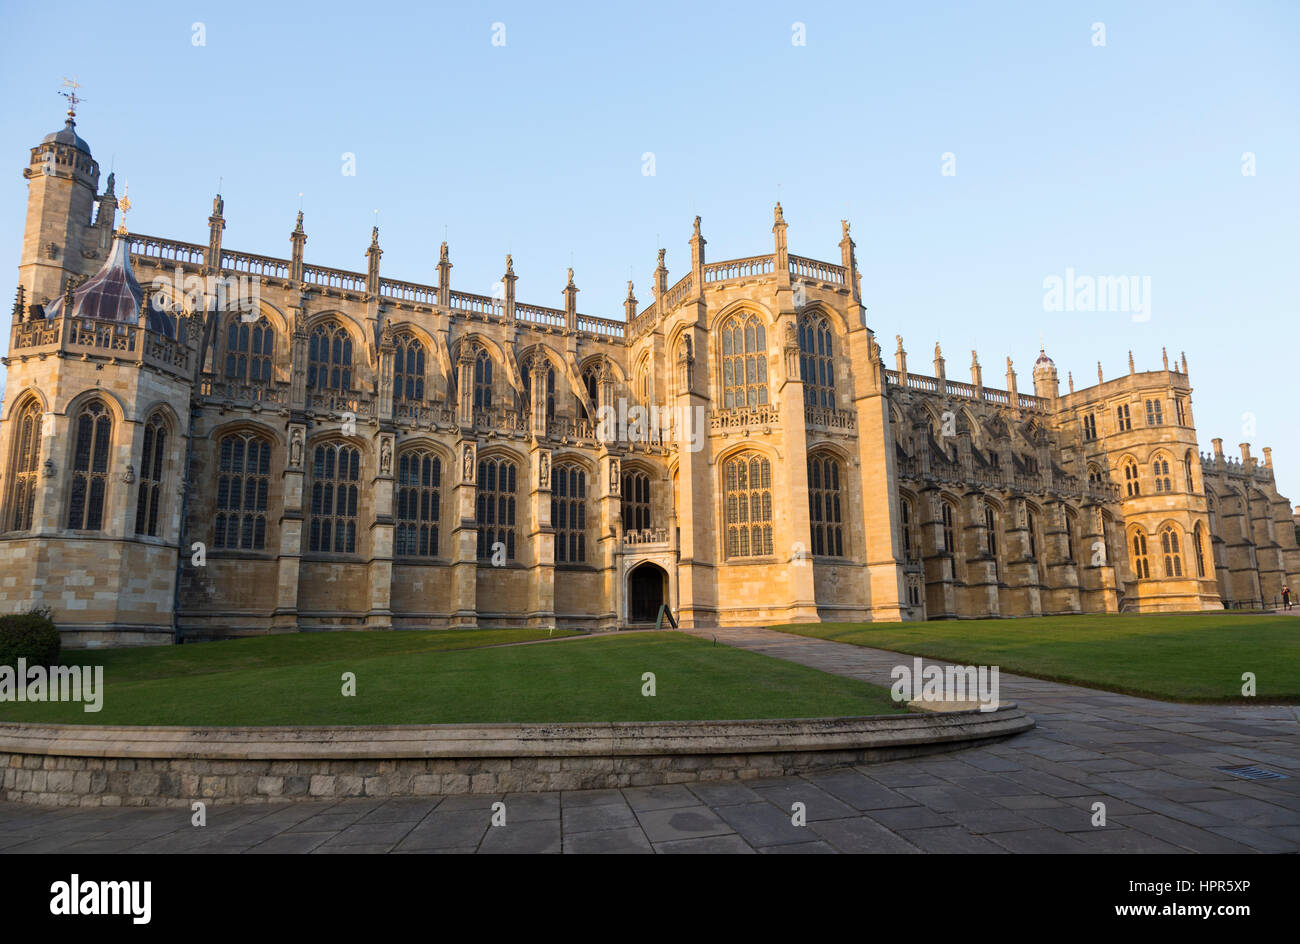 La façade sud / sud de l'aspect de la chapelle Saint George, à l'intérieur du château de Windsor. Windsor, Berkshire. UK. Dès les beaux jours avec sun & blue sky / ciel. Banque D'Images